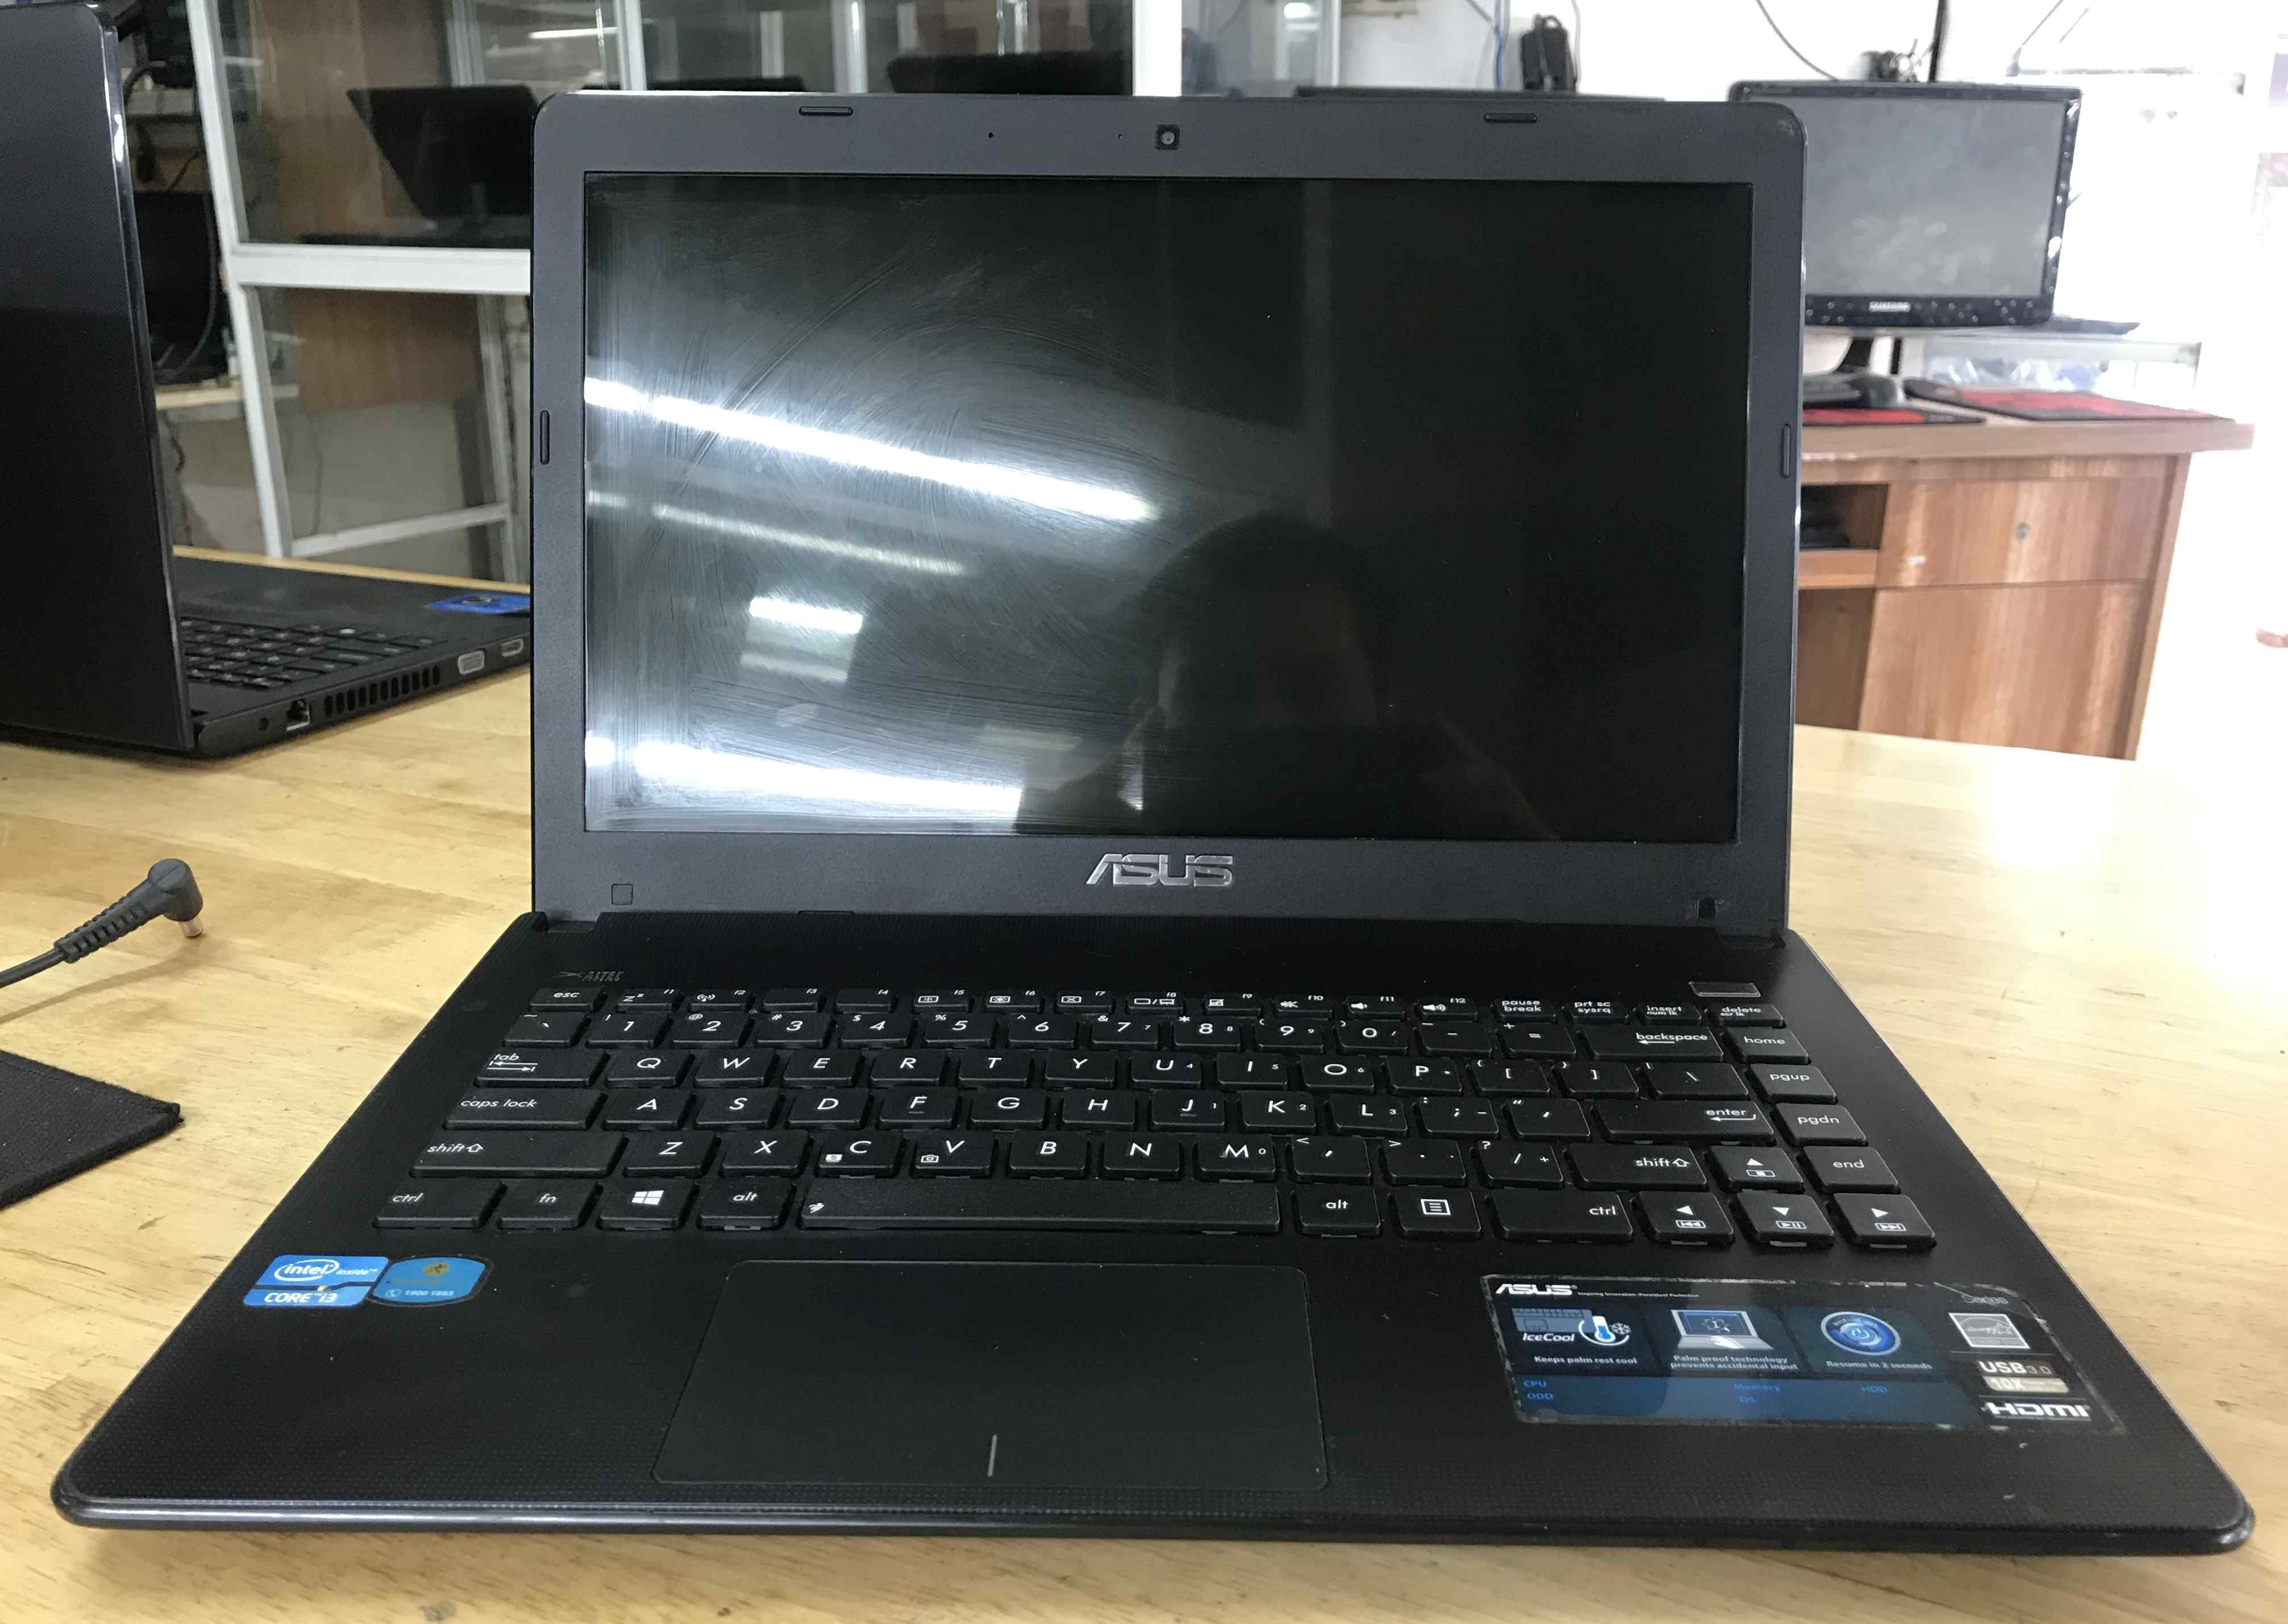 bán laptop cũ asus x401a giá rẻ